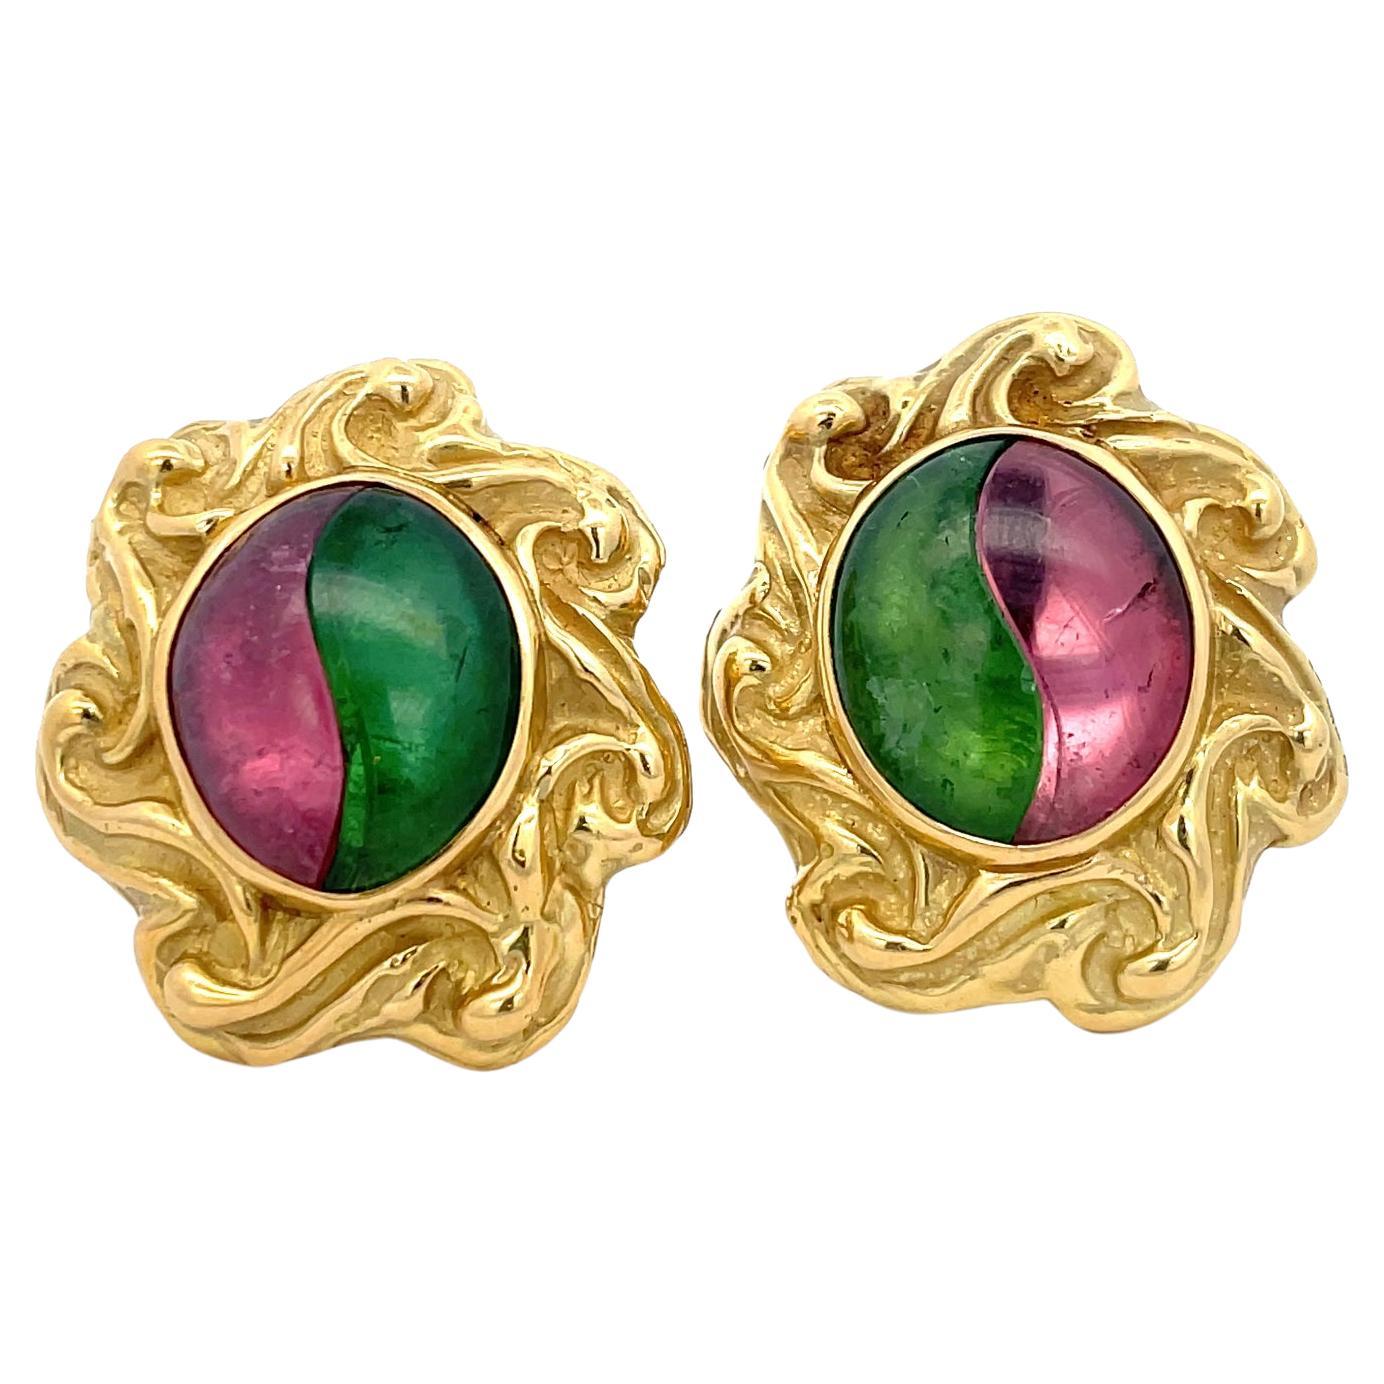 Elizabeth Gage - Boucles d'oreilles clips en or jaune 18 carats avec tourmaline rose et verte